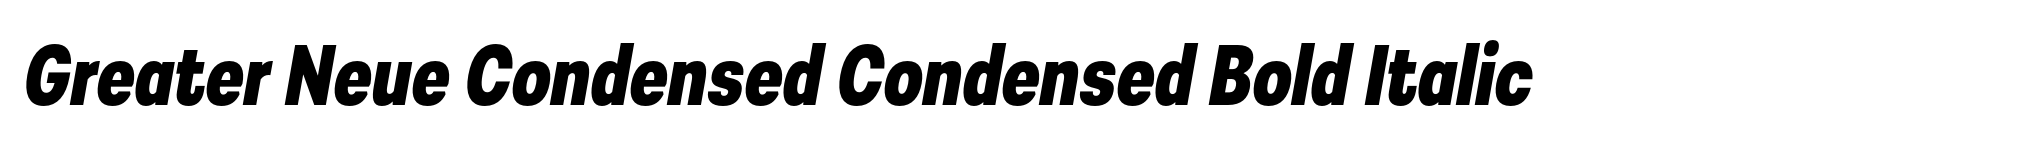 Greater Neue Condensed Condensed Bold Italic image